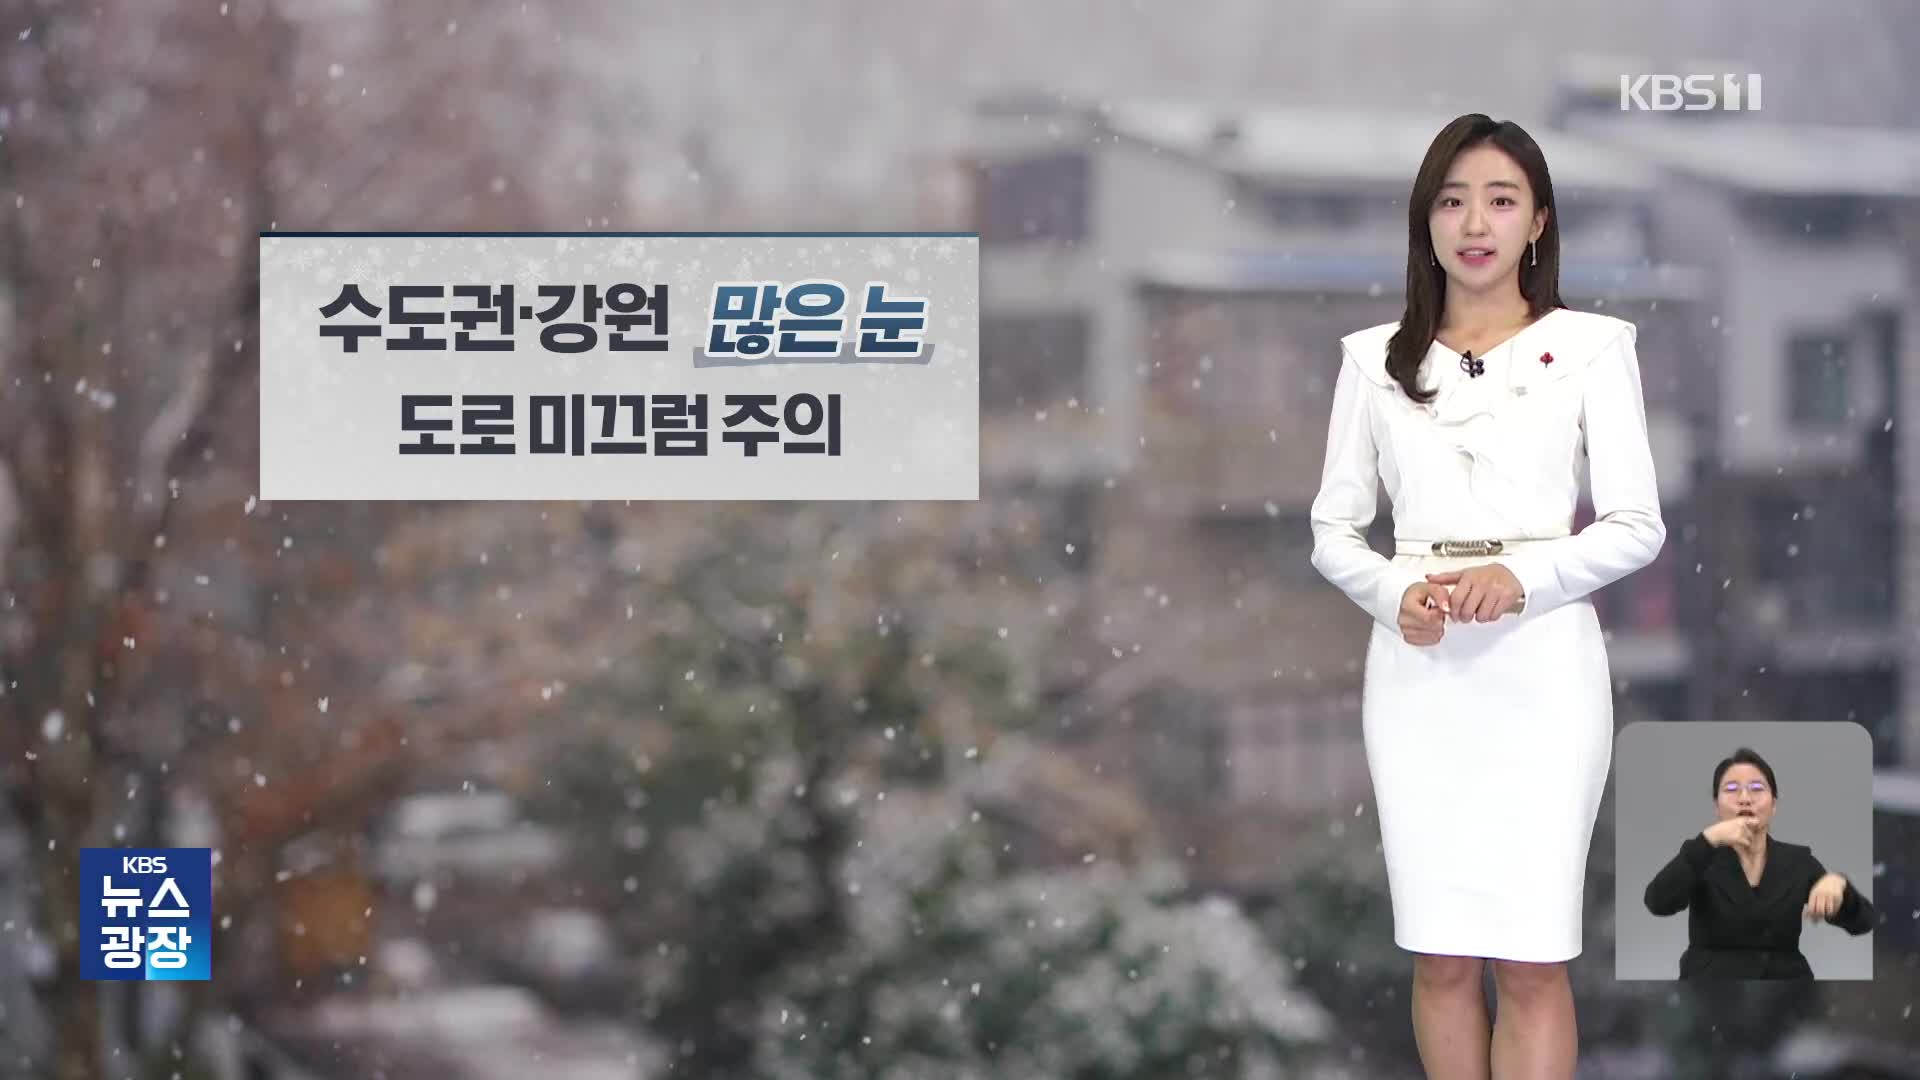 [주말 날씨] 전국 눈비…수도권·강원 많은 눈